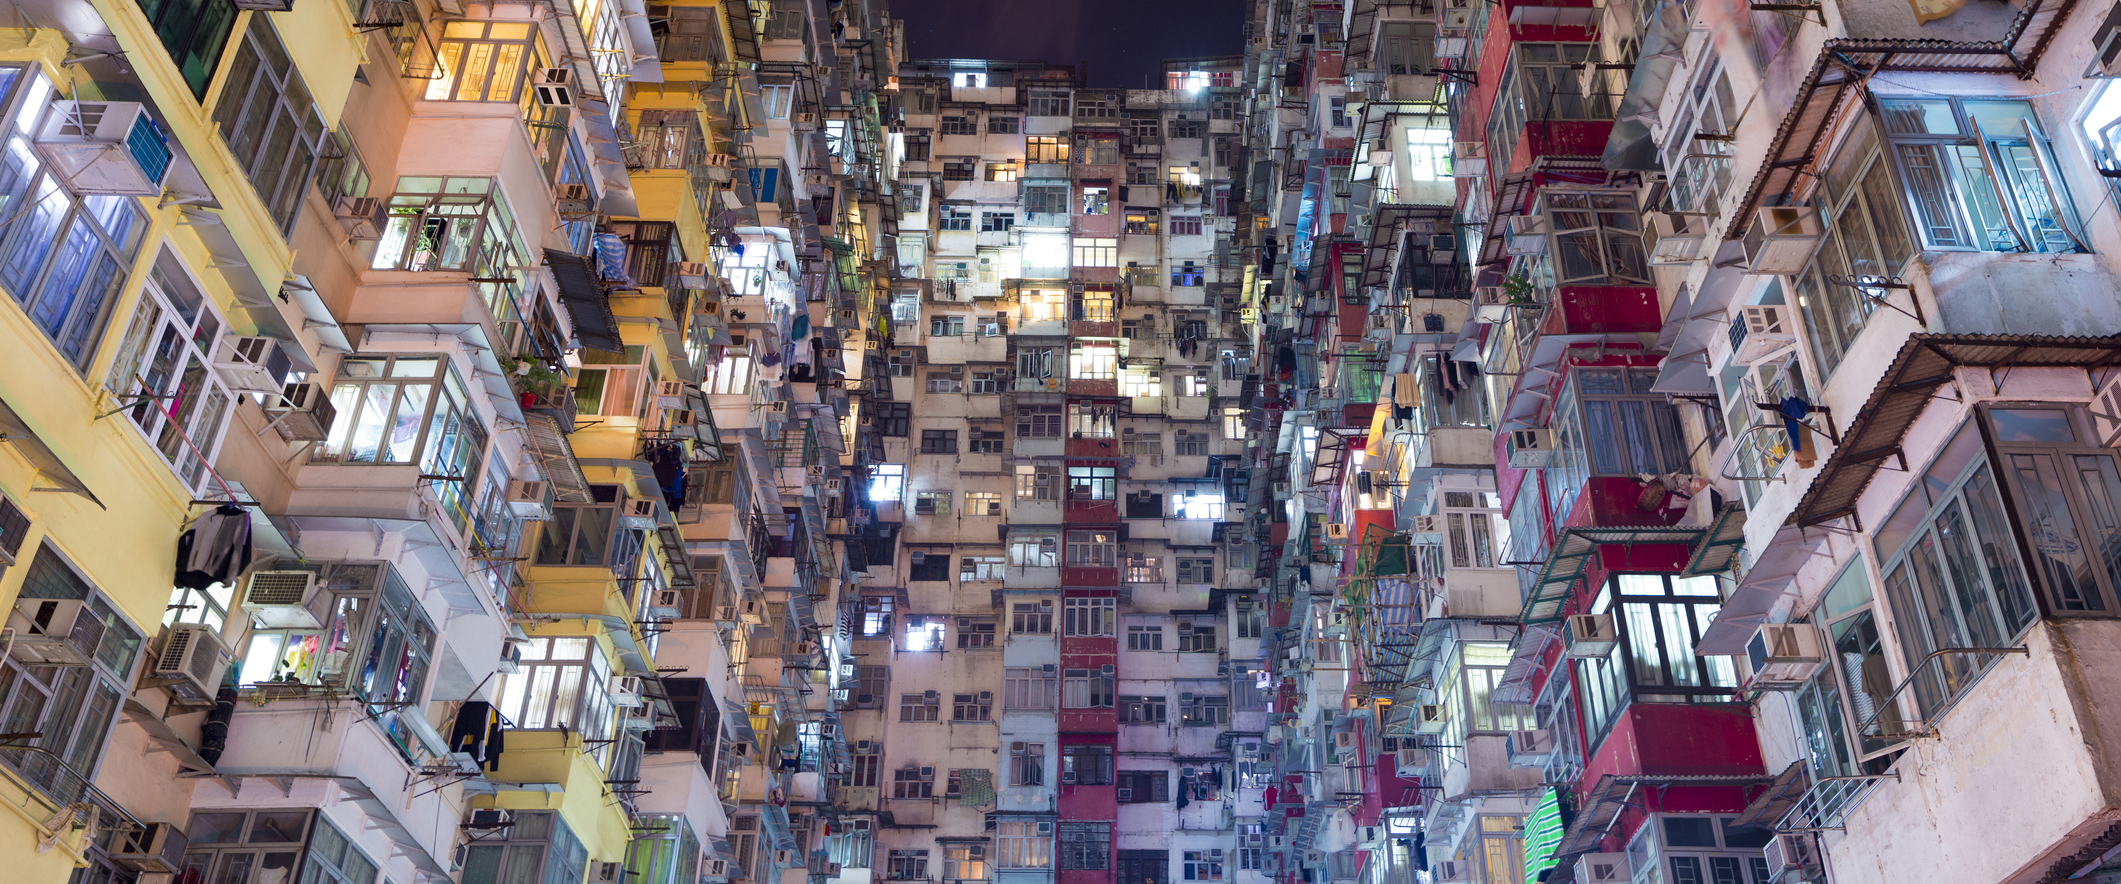 Documentário mostra arquitetura e fenômeno das casas-cubículo em Hong Kong